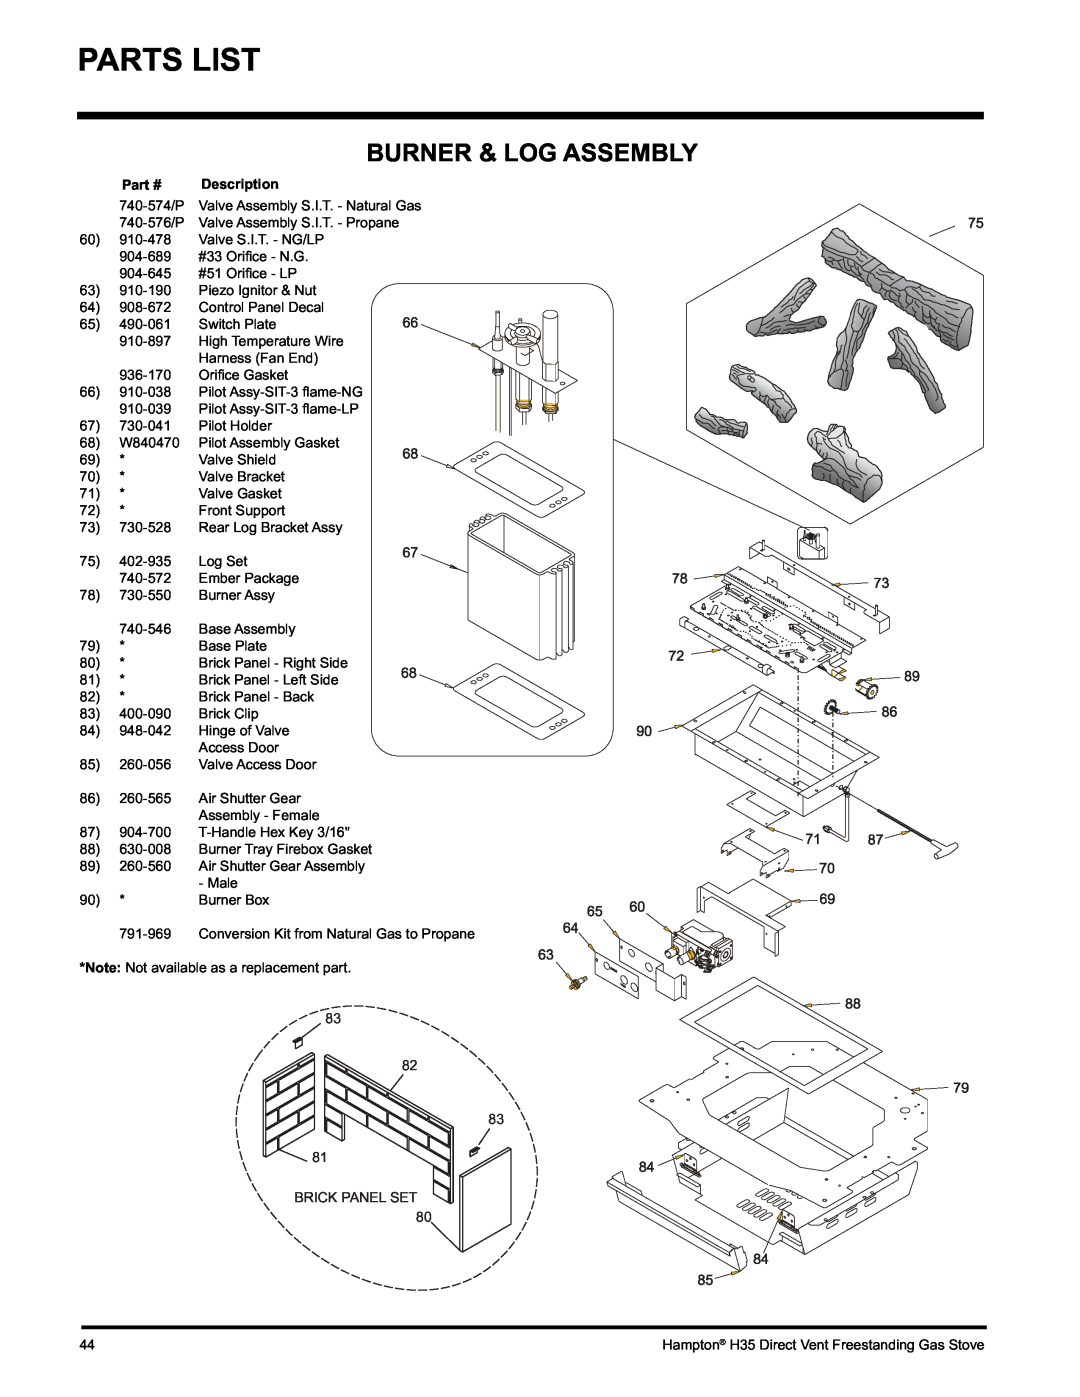 Hampton Direct H35-NG1, H35-LP1 installation manual Parts List, Burner & Log Assembly 